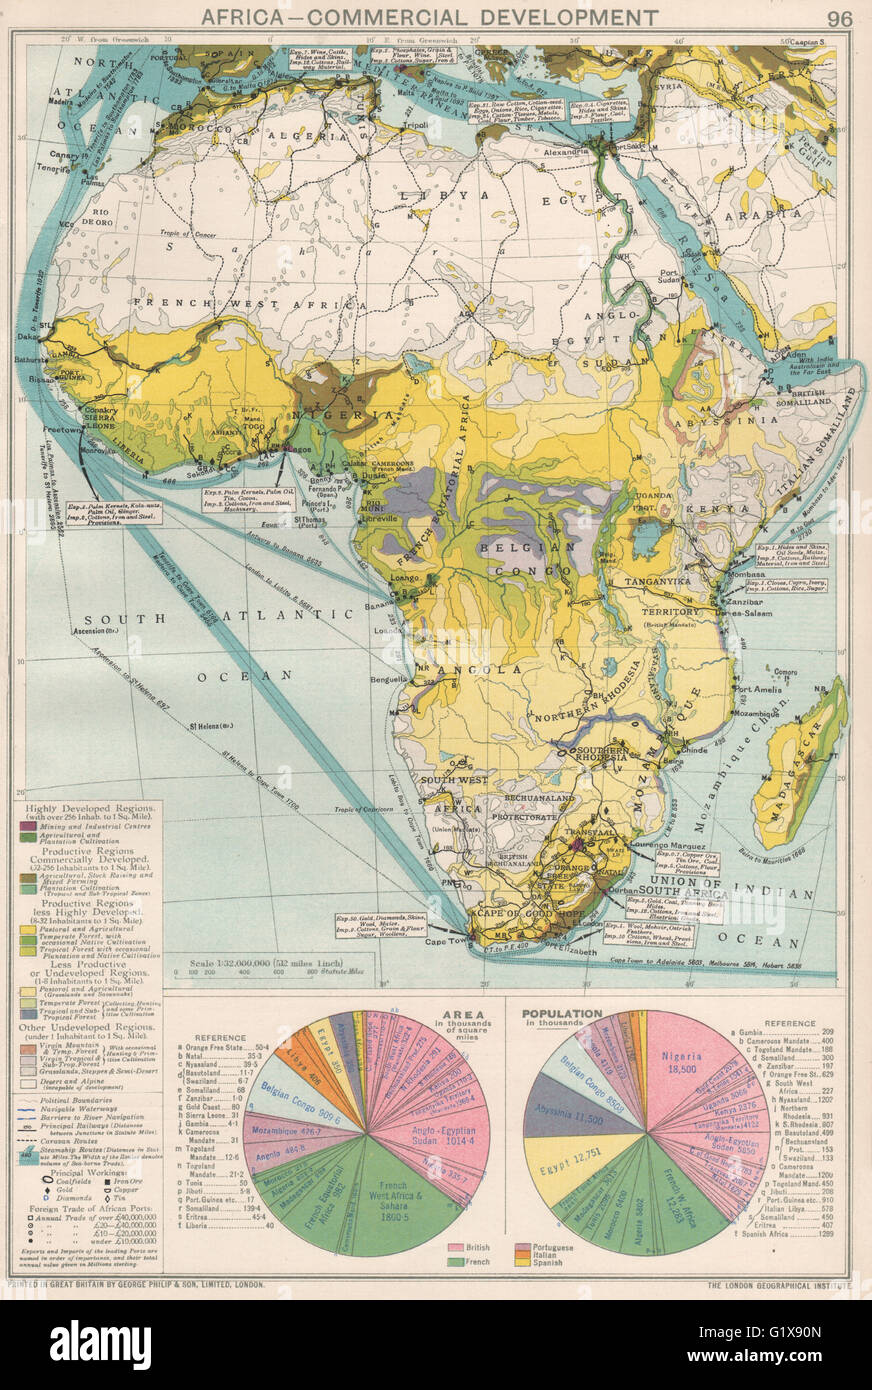 Afrika. Kommerzielle Entwicklung. Importieren Sie & Exportrouten. Bergbau, 1925 alte Karte Stockfoto